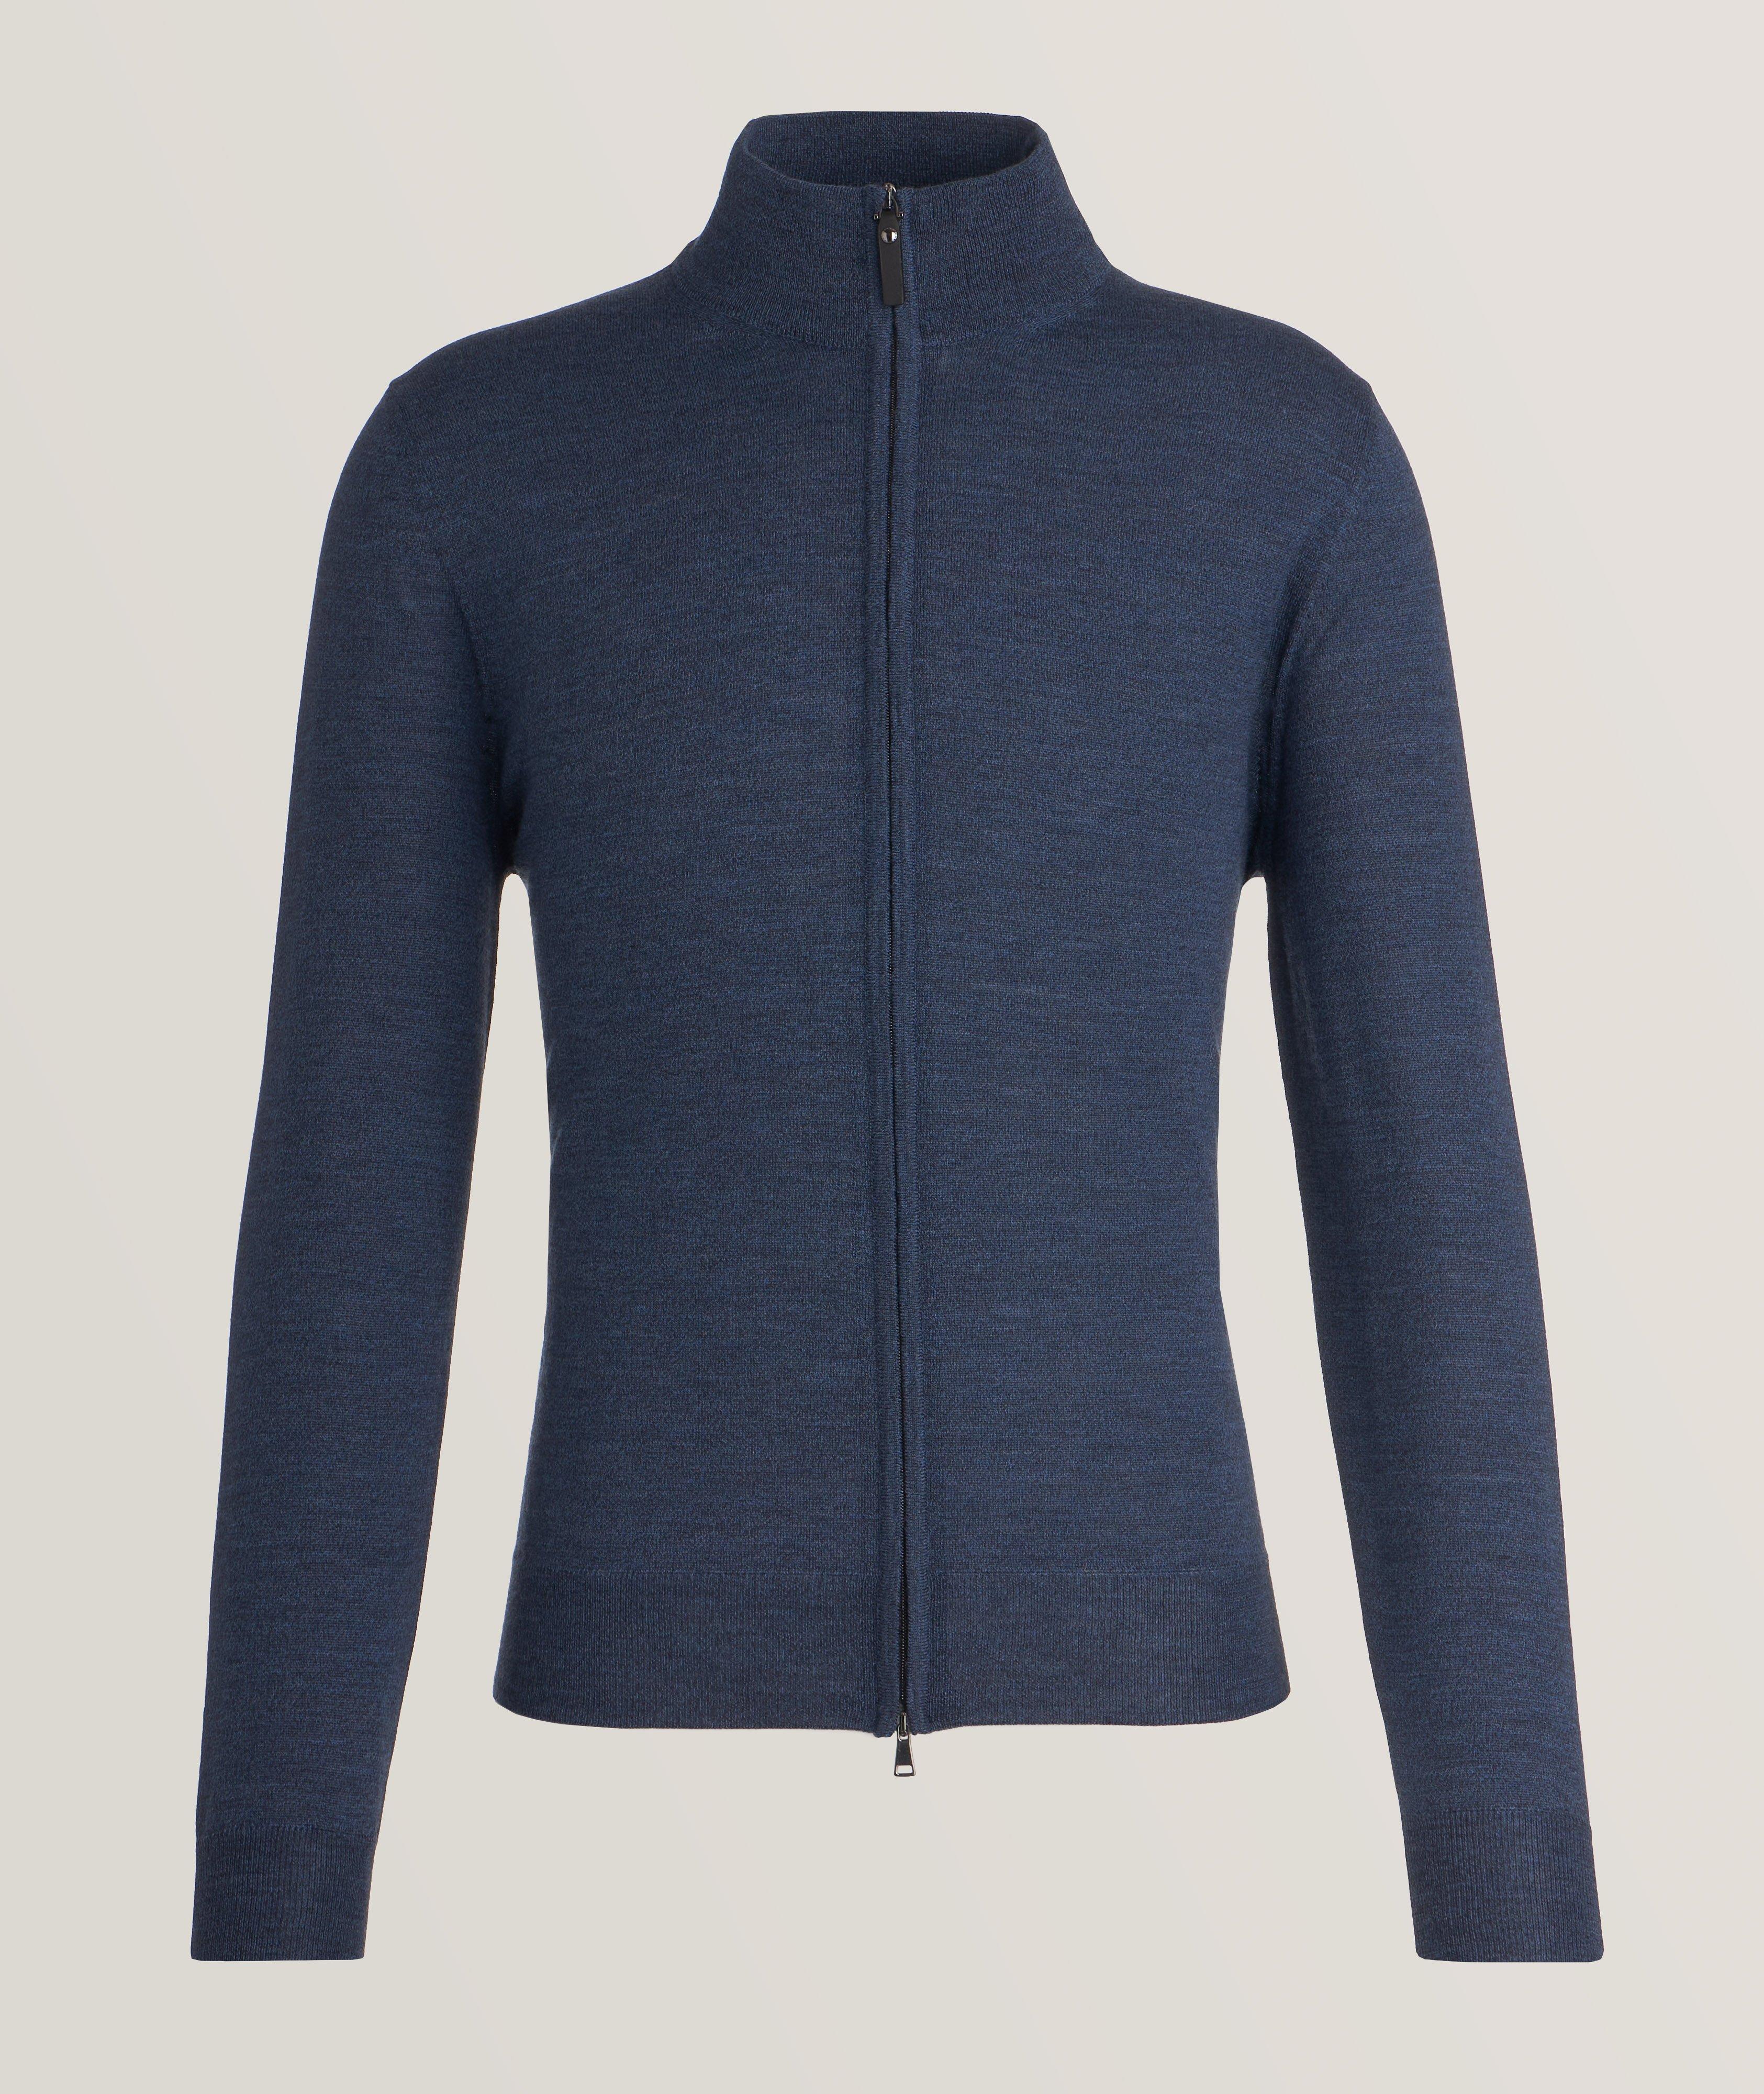 Canali Merino Wool Full-Zip Sweater